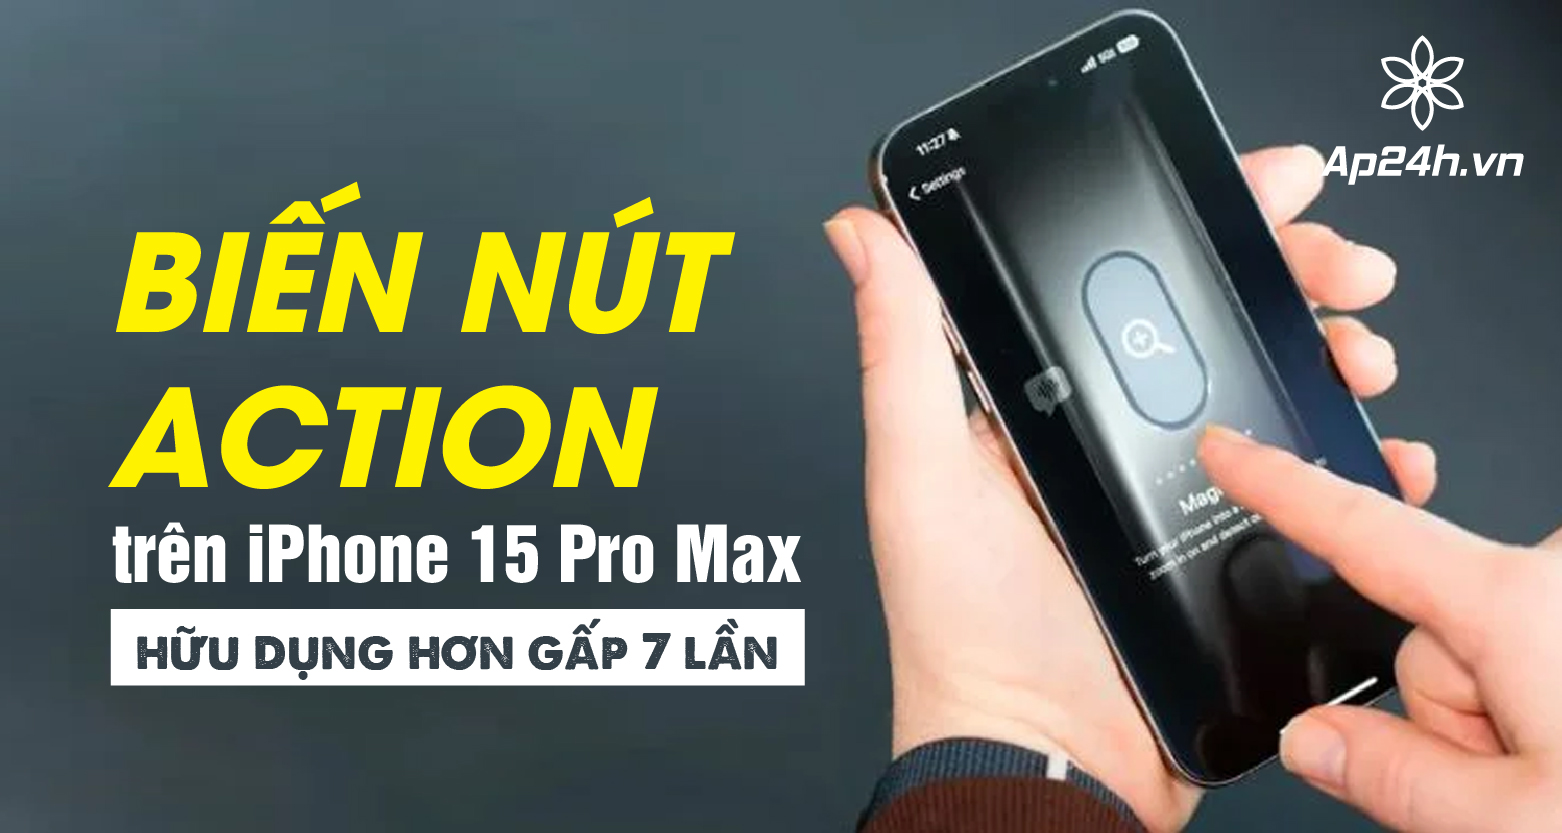 Biến nút Action trên iPhone 15 Pro Max hữu dụng hơn gấp 7 lần 